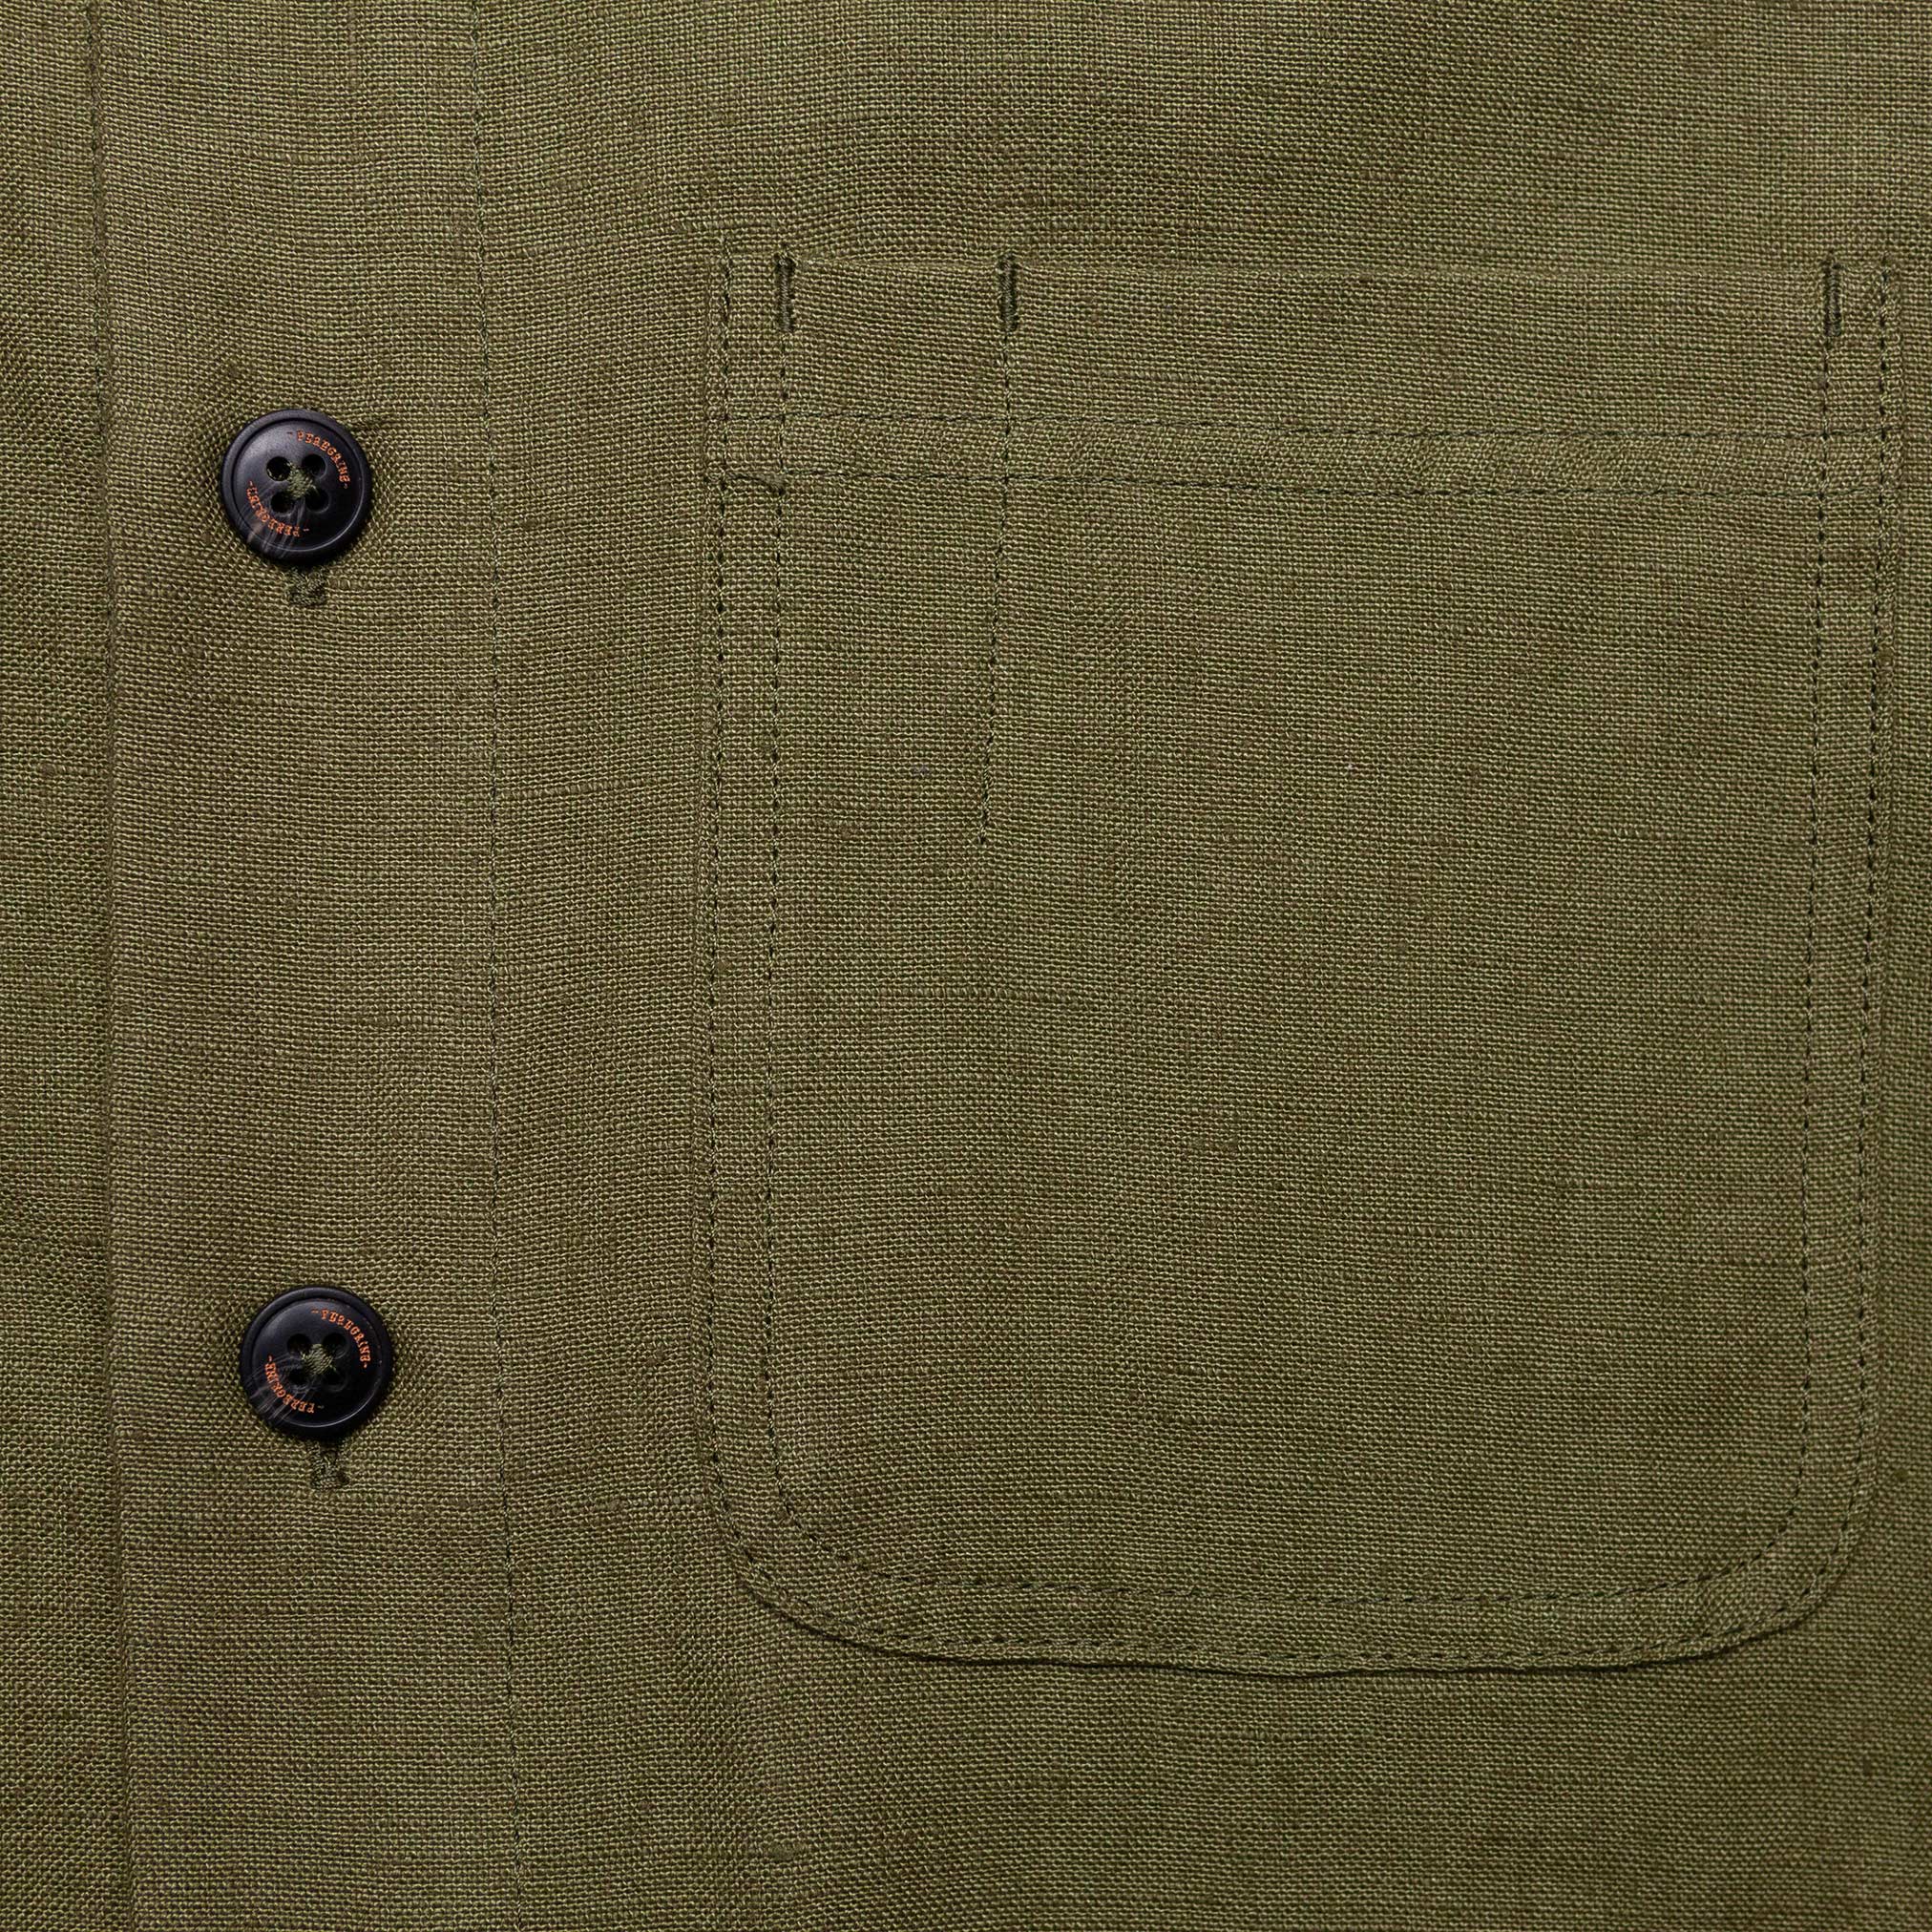 Grange Jacket in Olive Linen